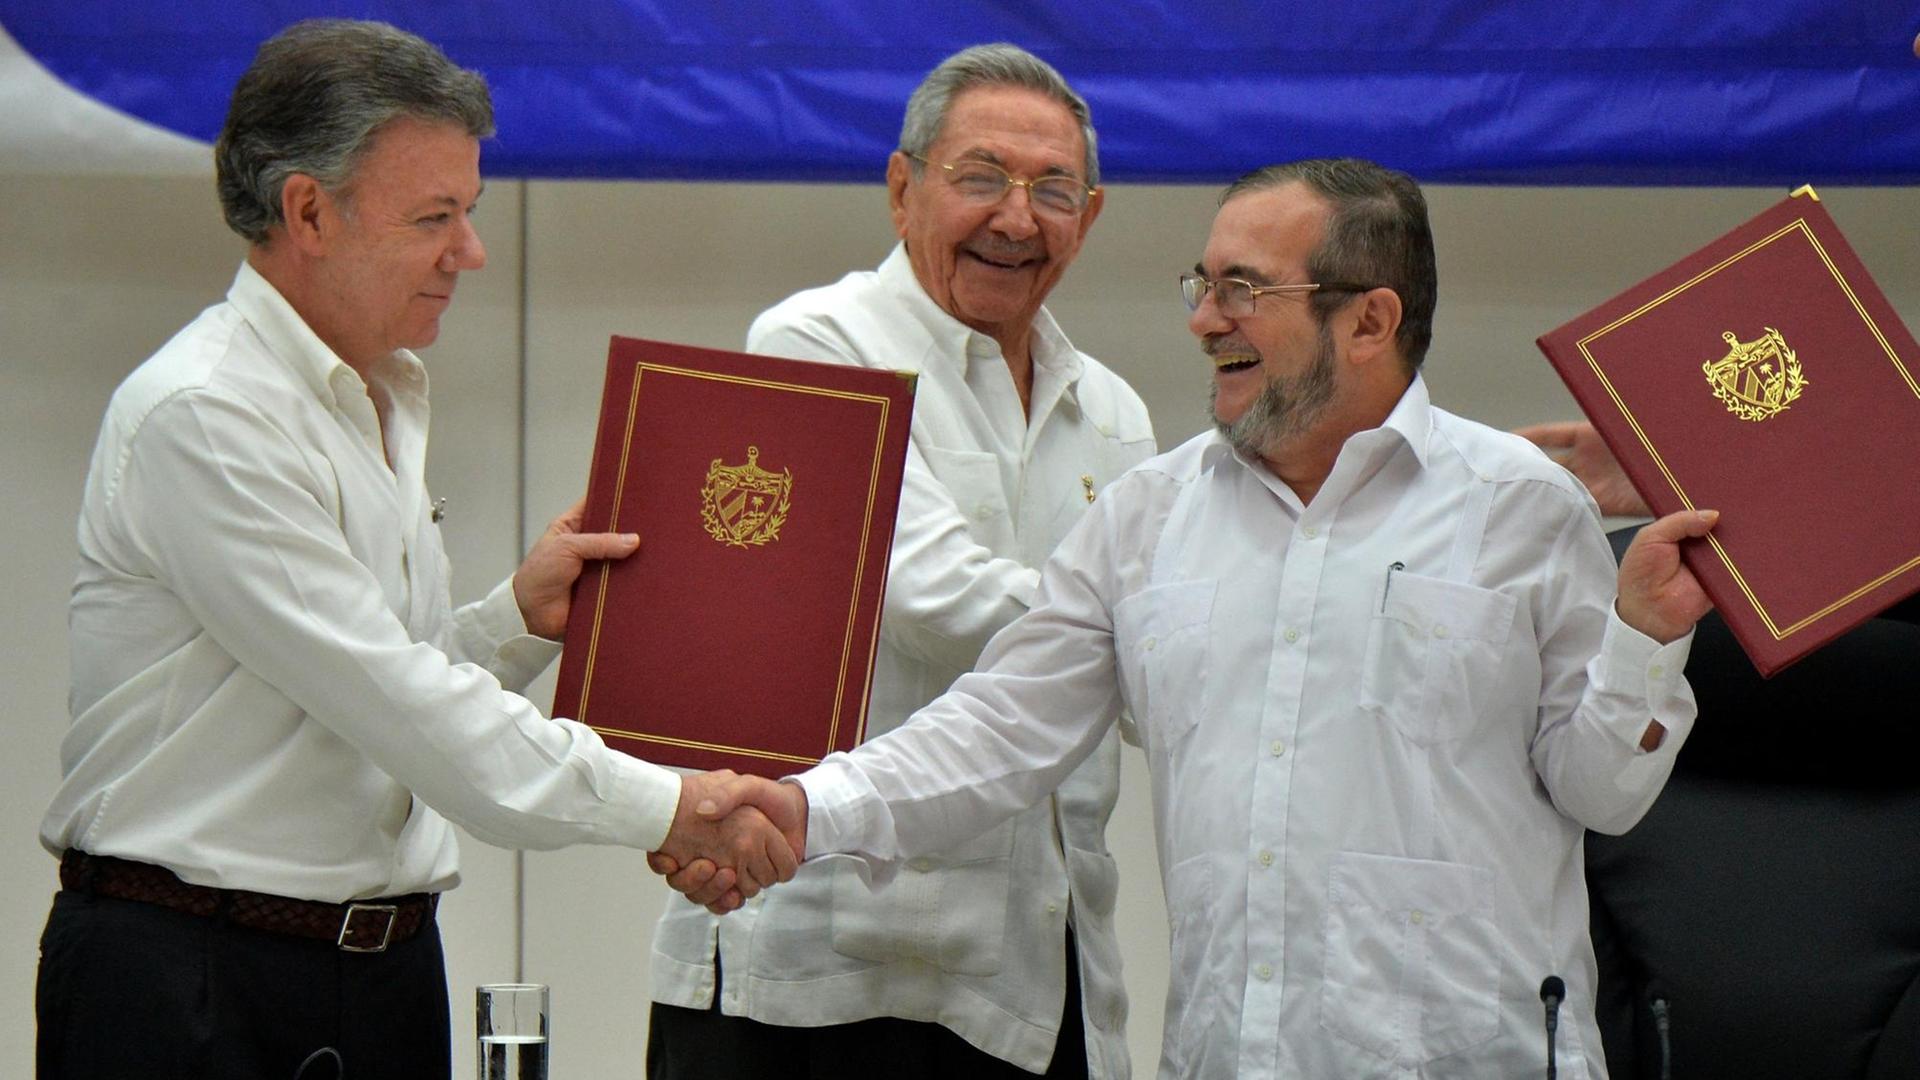 Kolumbiens Präsident Santos und FARC-Anführer Jimenez geben sich die Hand. Hinter ihnen steht der kubanische Präsident Castro, der in den Gesprächen vermittelt hatte.